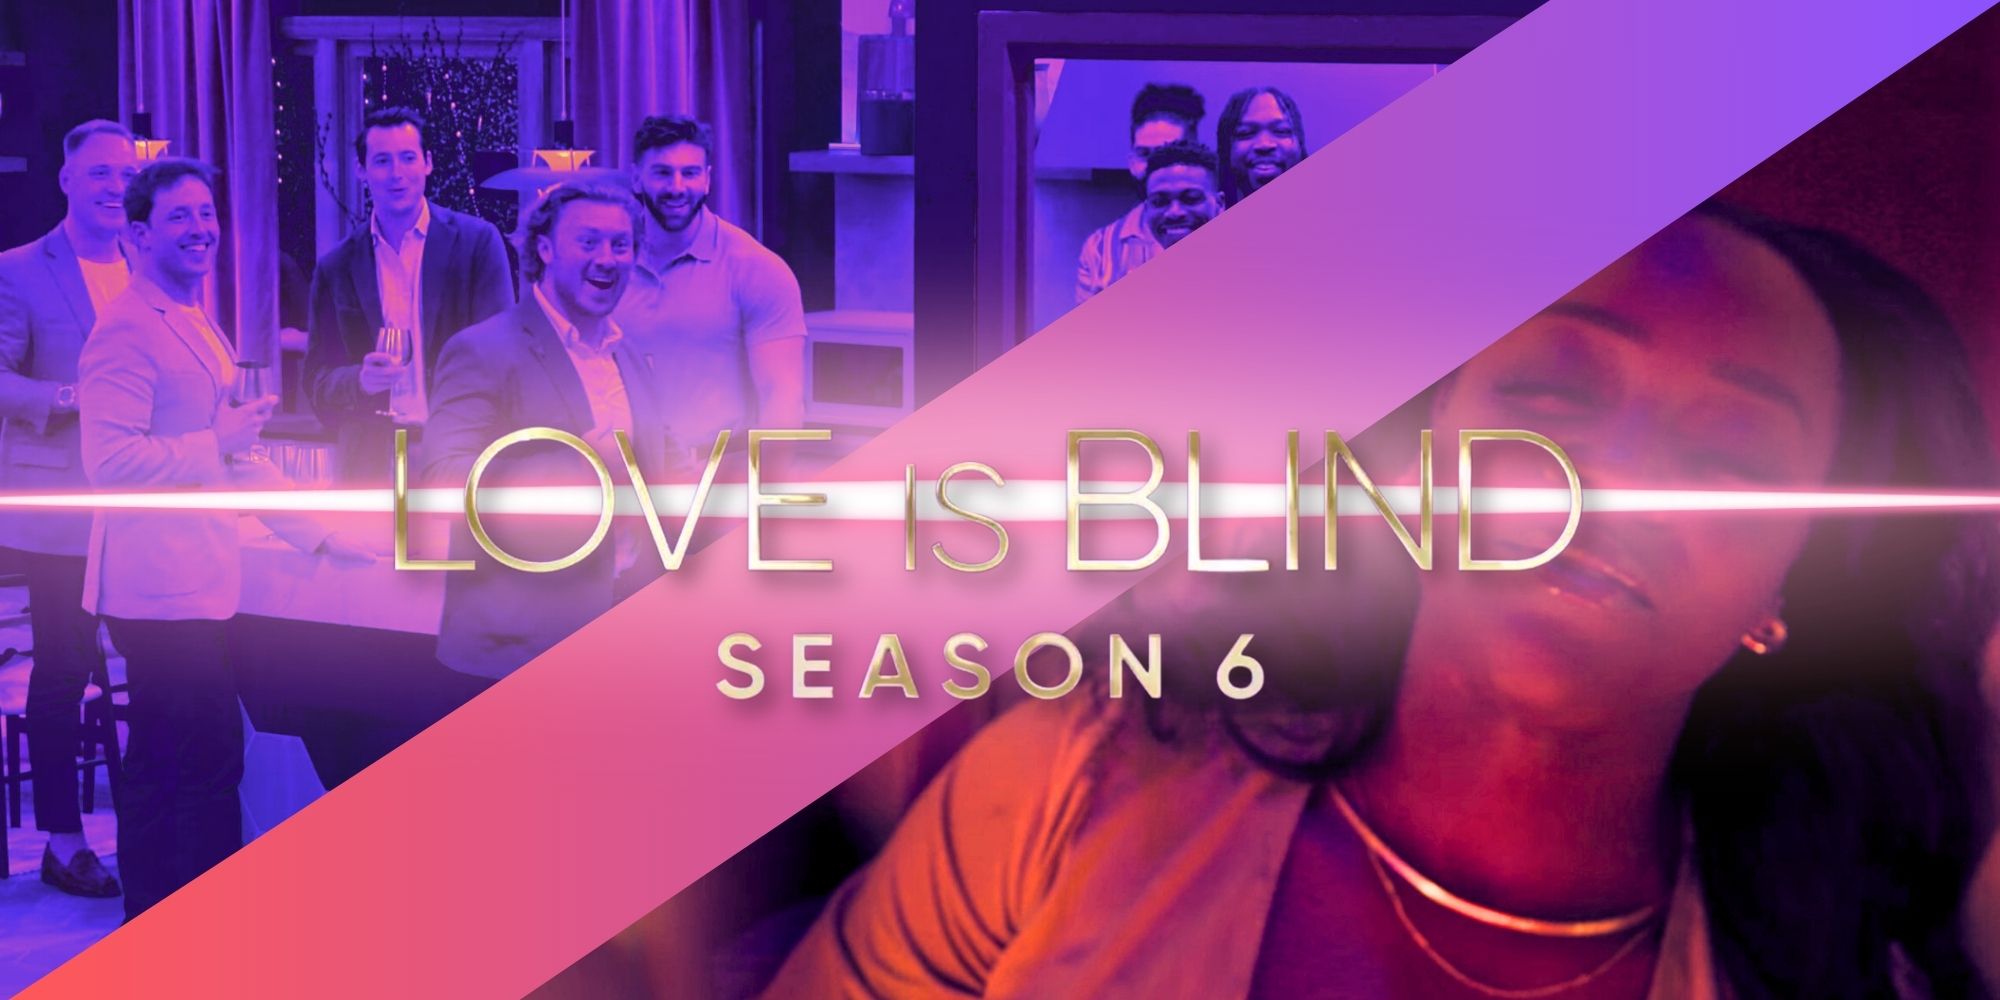 El concursante de la temporada 6 de This Love Is Blind es una "bandera roja andante", según AD Smith